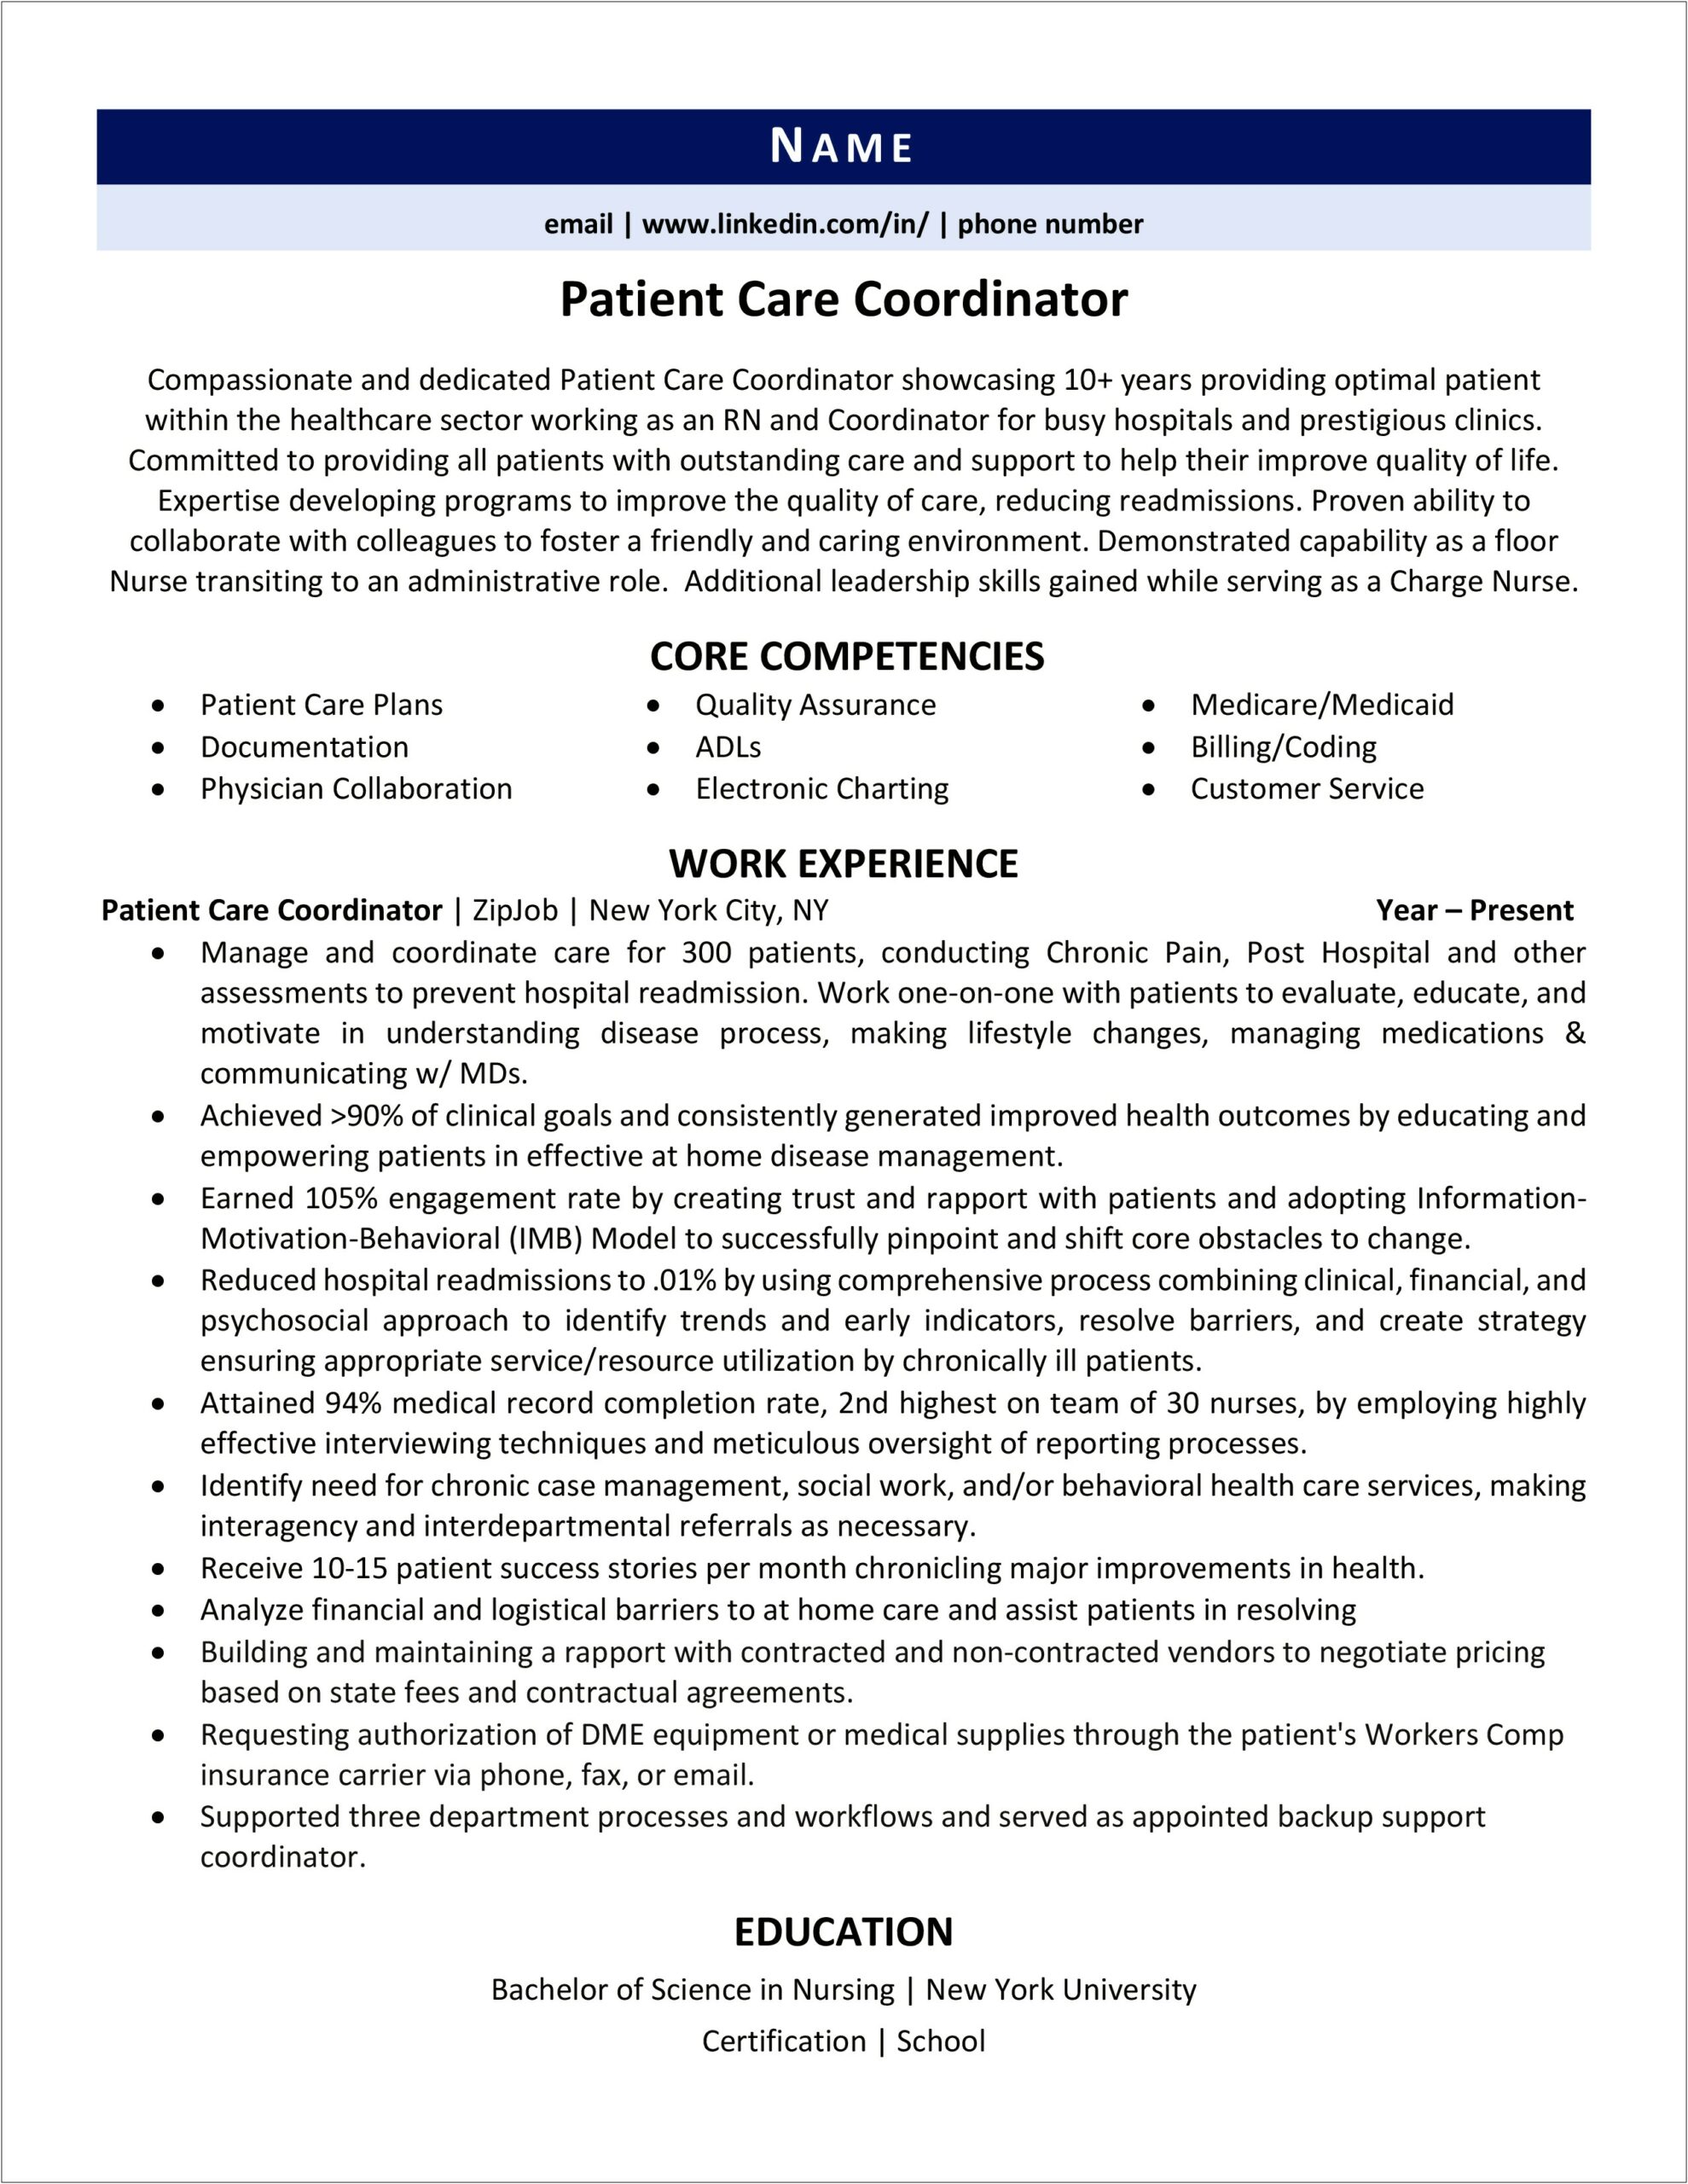 Resume For Patient Coordinator Samples